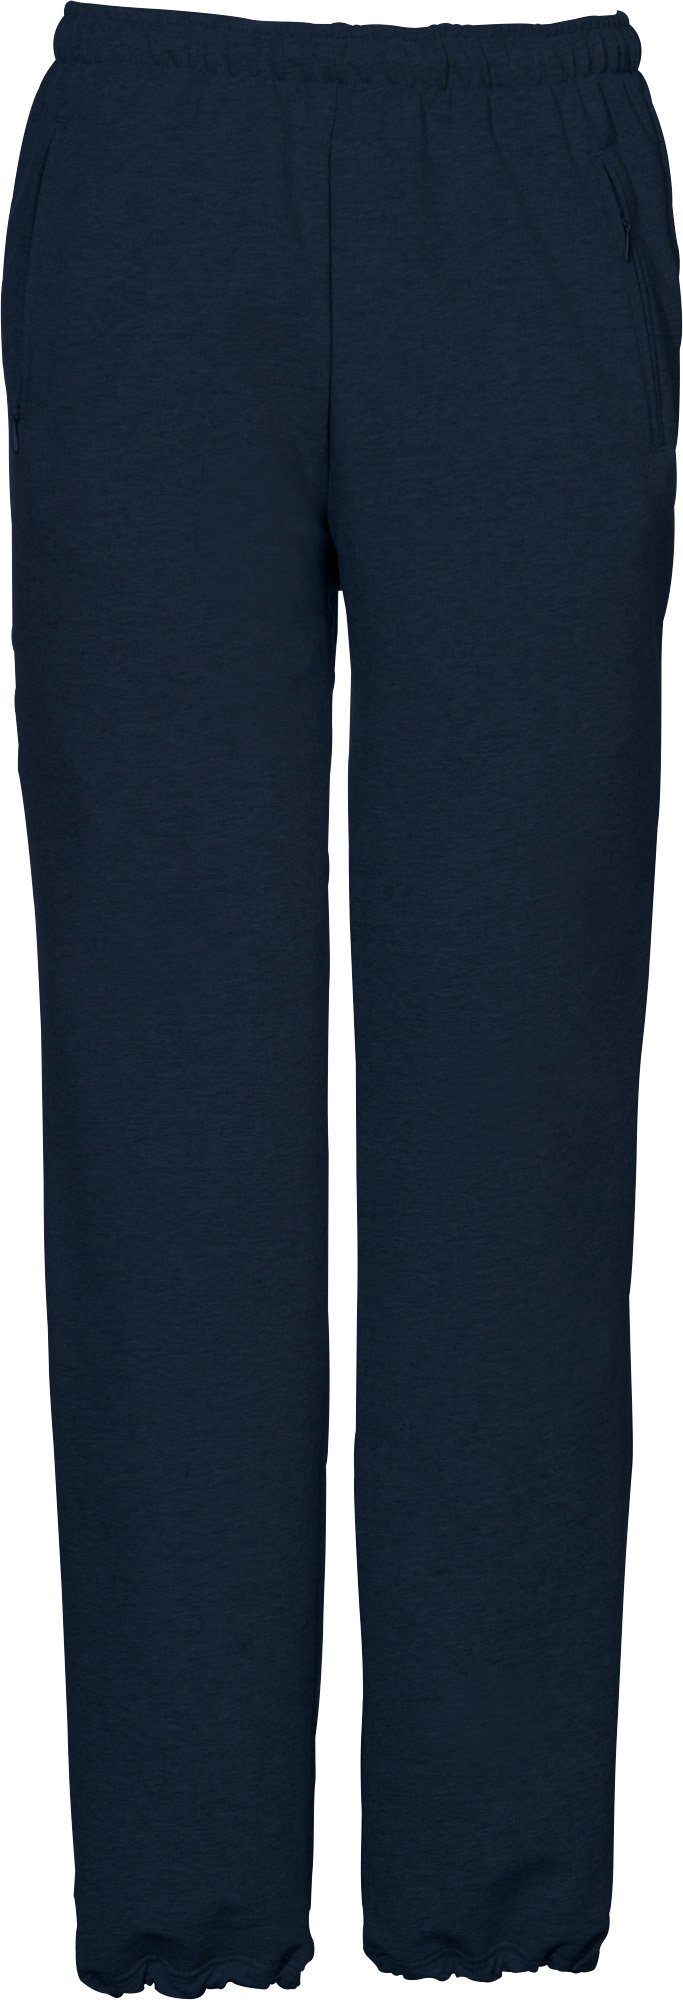 SCHNEIDER Sportswear Jogginghose Herren-Freizeithose dunkelblau lang "HORGENM", Uni